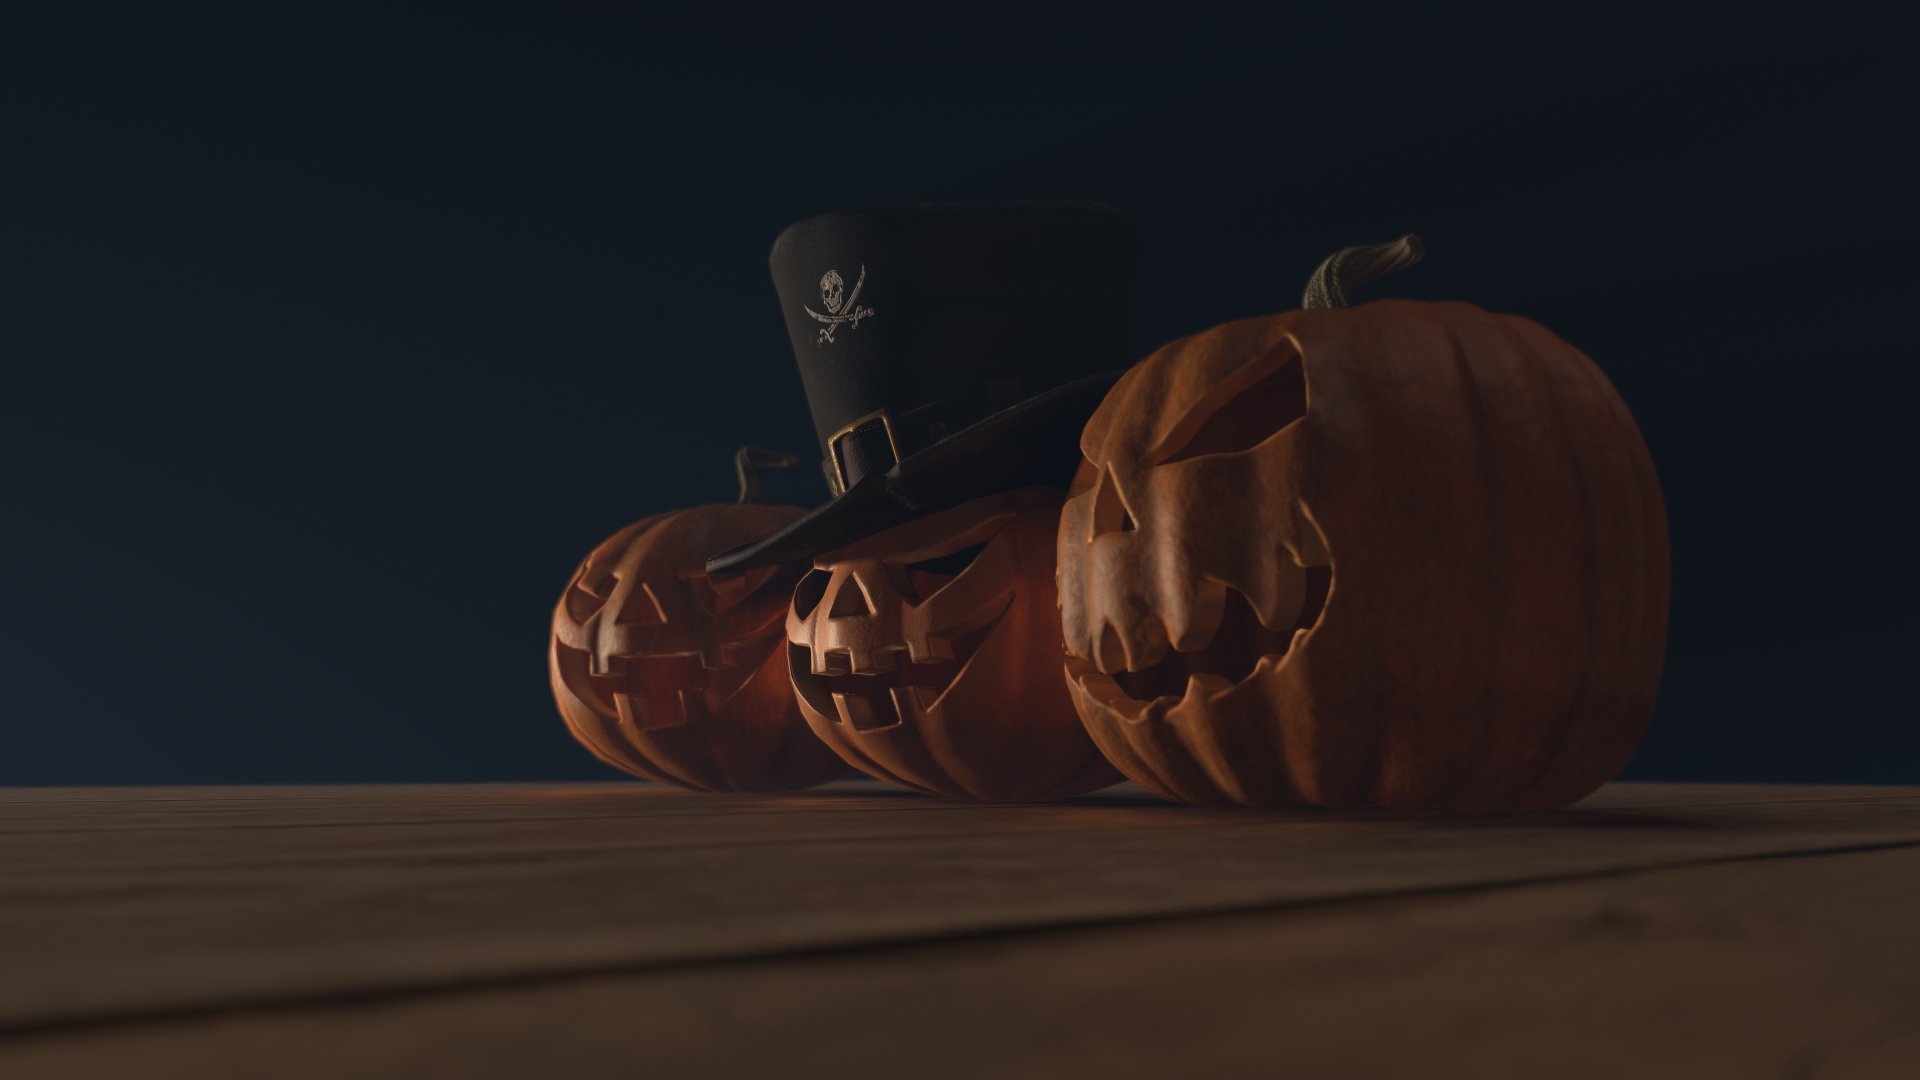 Halloween pumpkins, 3D model, By Vaarg, Pumpkin 3D print, 1920x1080 Full HD Desktop